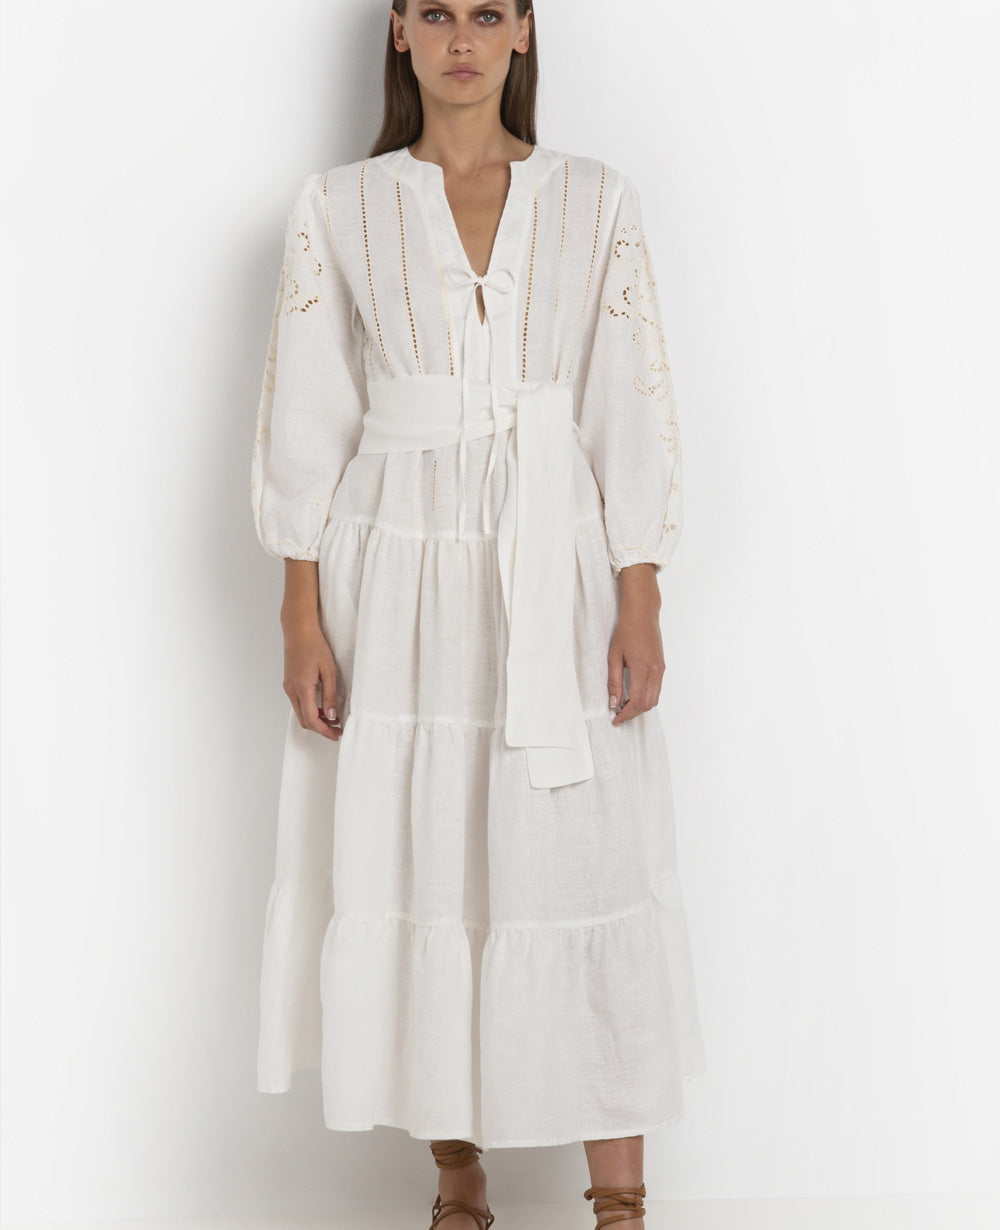 LONG LINEN DRESS "FLEUR" WHITE/CREAM